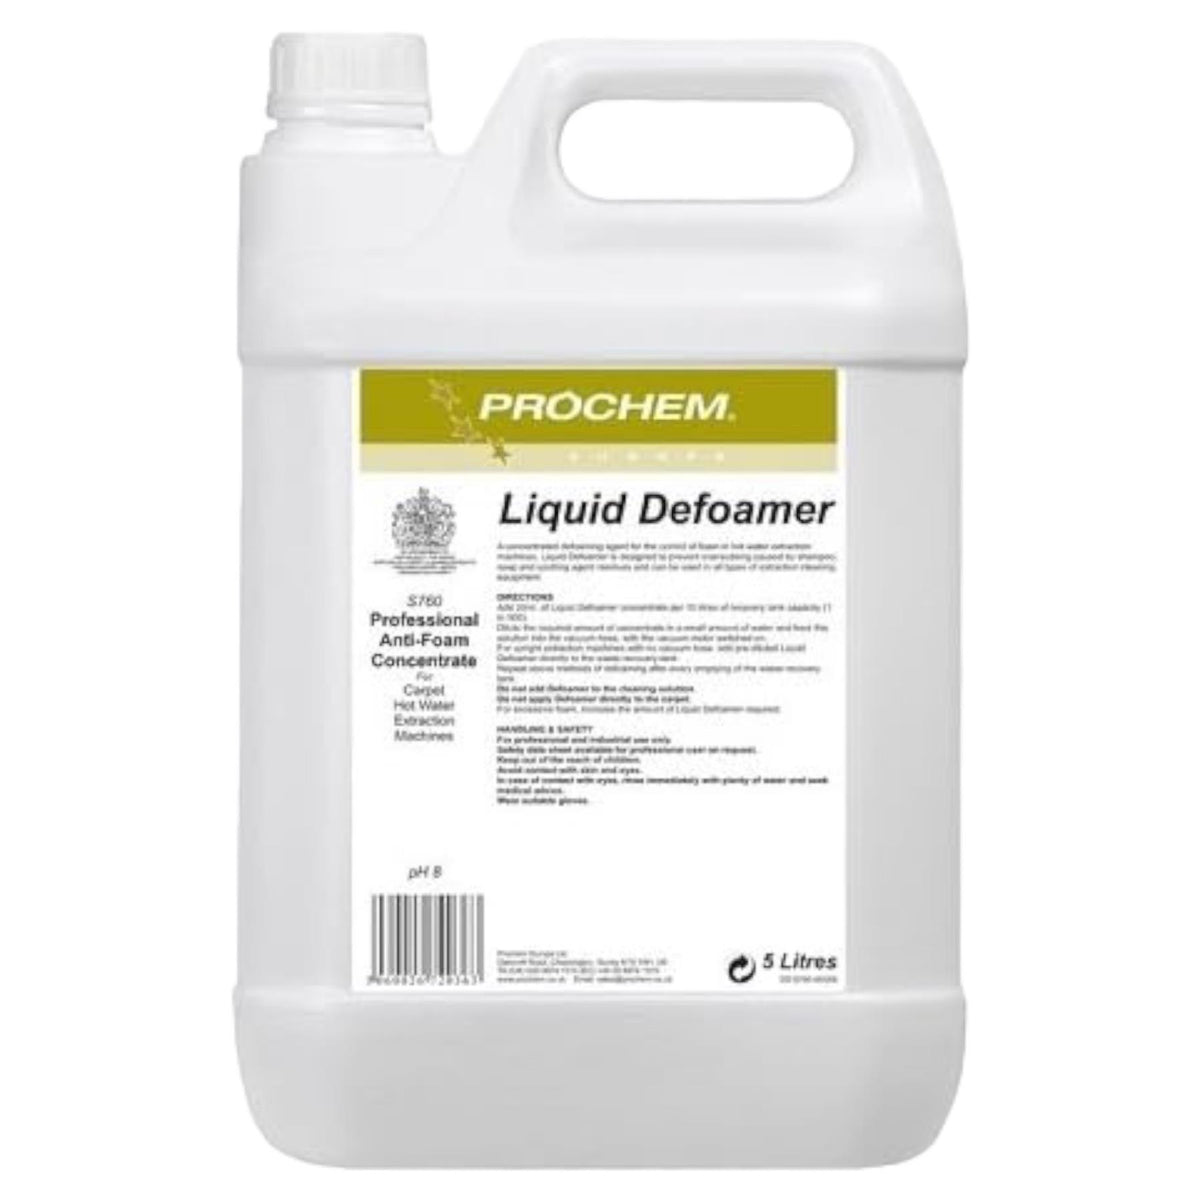 Prochem Liquid Defoamer 5 Litre for Preventing Over-Sudding